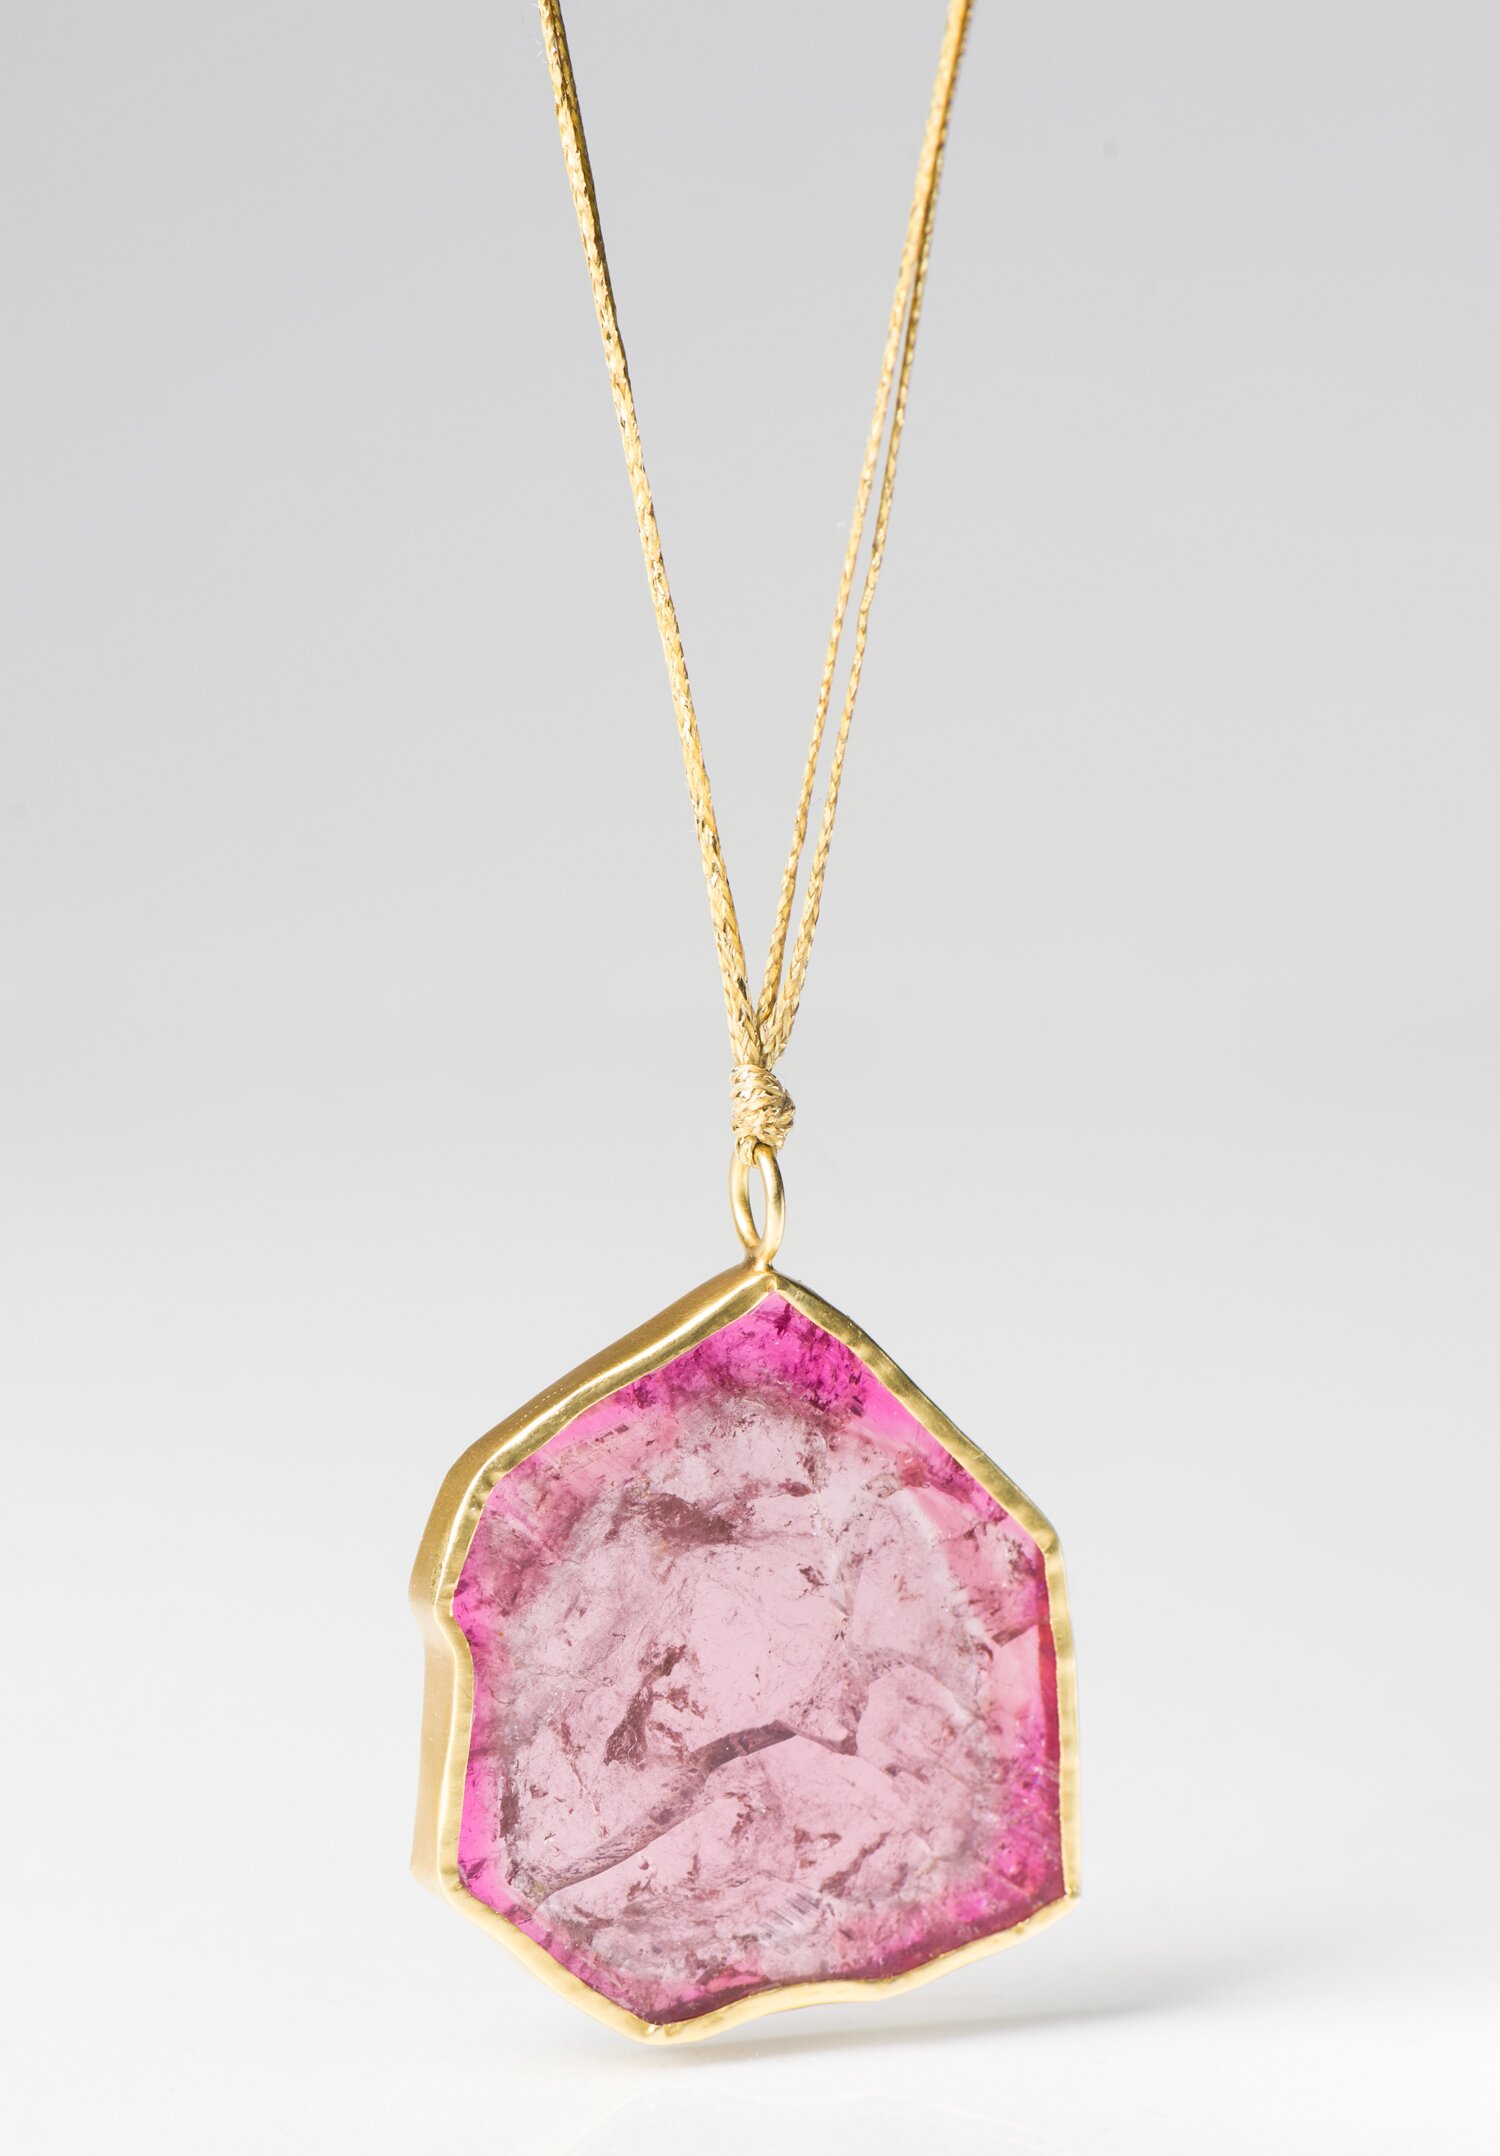 Pink tourmaline pendant